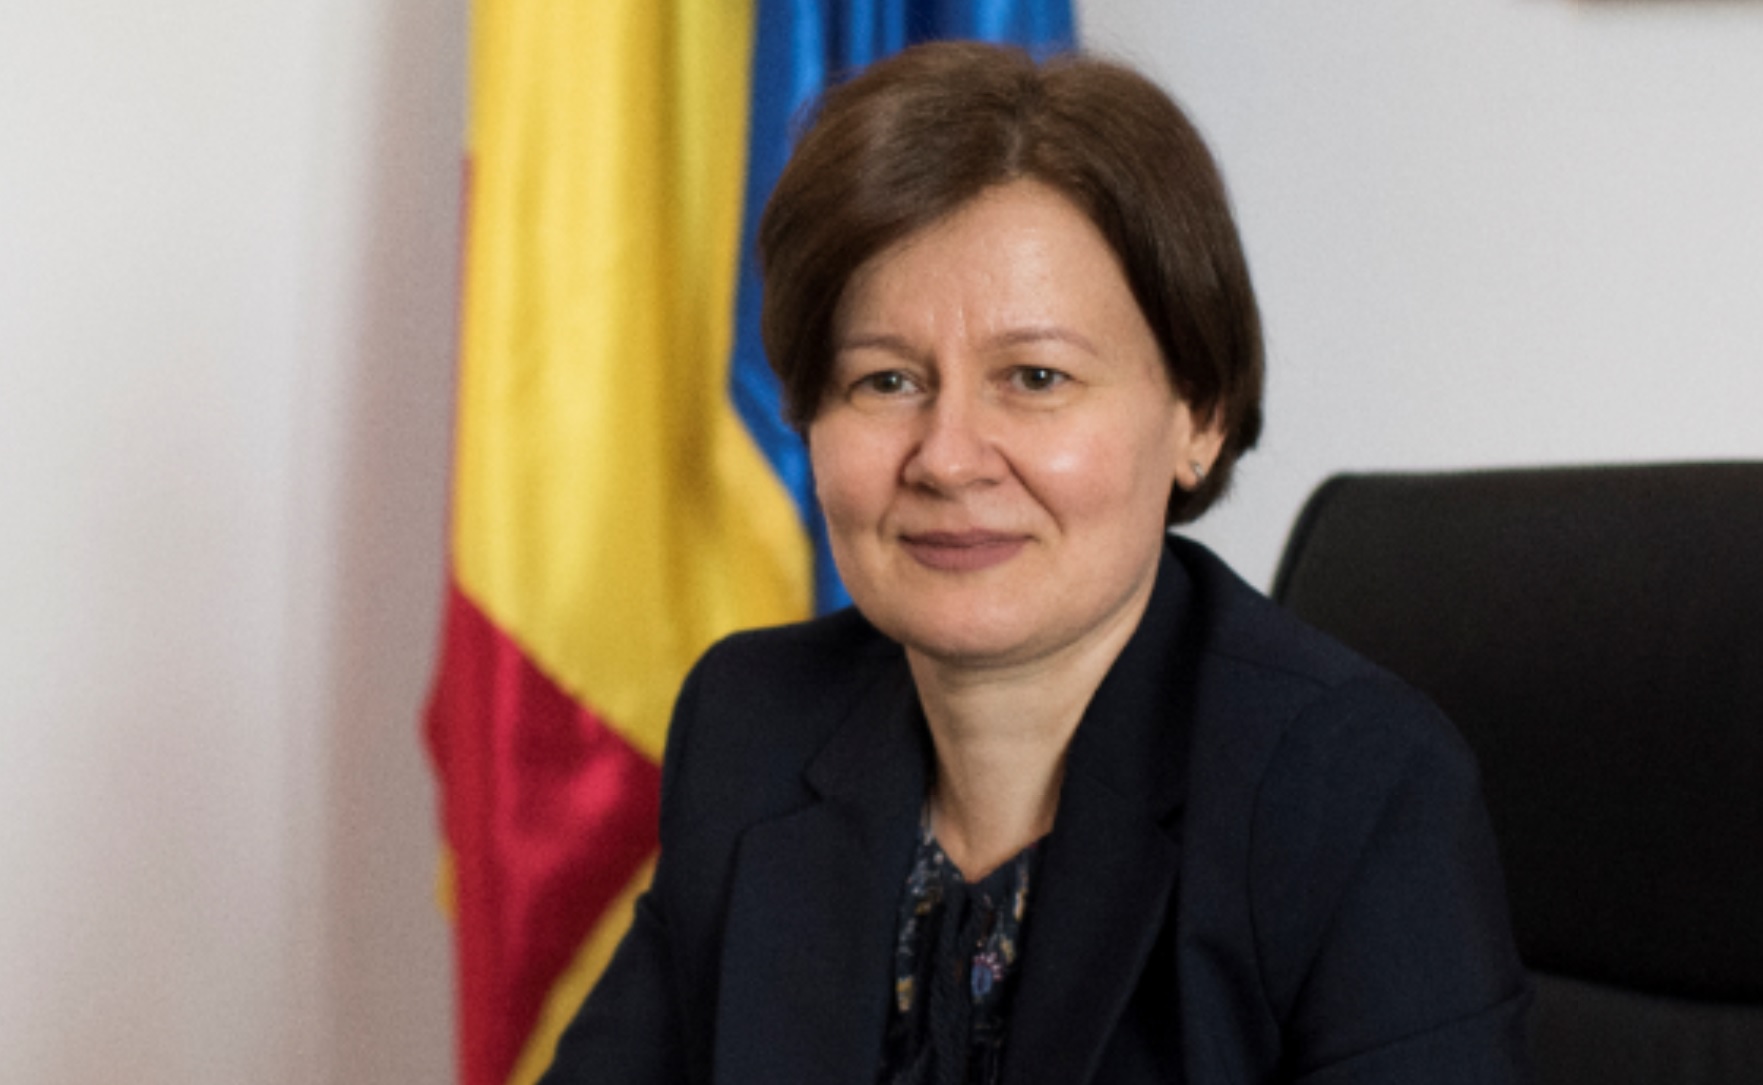 Reguli noi pentru audierea minorilor violați. Ce măsuri anunţă  Procurorul General al României